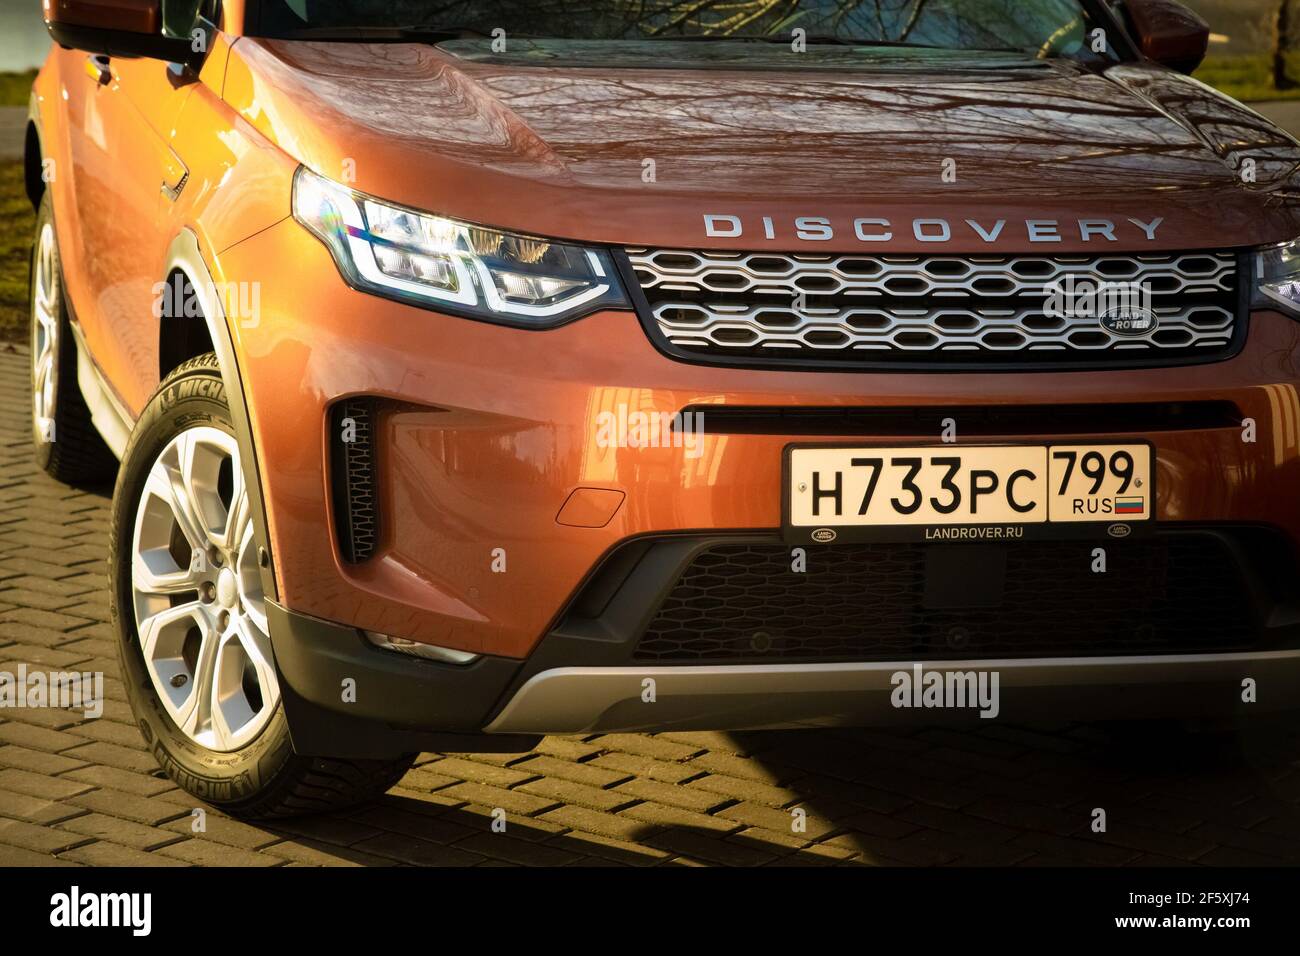 Moskau, Russland - 20. Dezember 2019: Der neue Land Rover Discovery Sport 2019 steht auf dem Park. Nahaufnahme der Vorderansicht der Seite. Scheinwerfer, Stoßfänger und Haube von orange suv, silberne Räder, .. Stockfoto